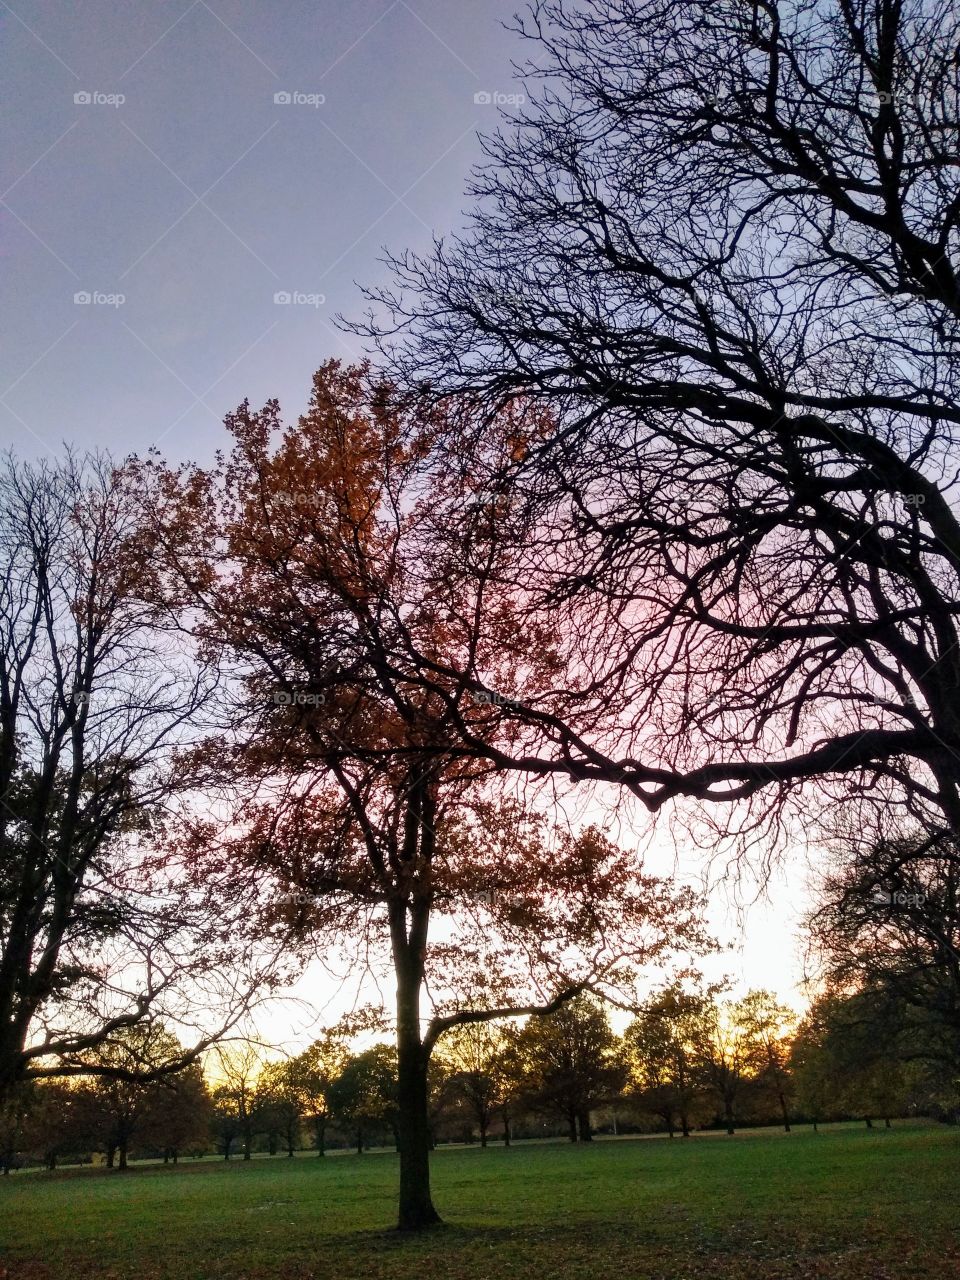 Autumn Sunset in Walpole Park, London